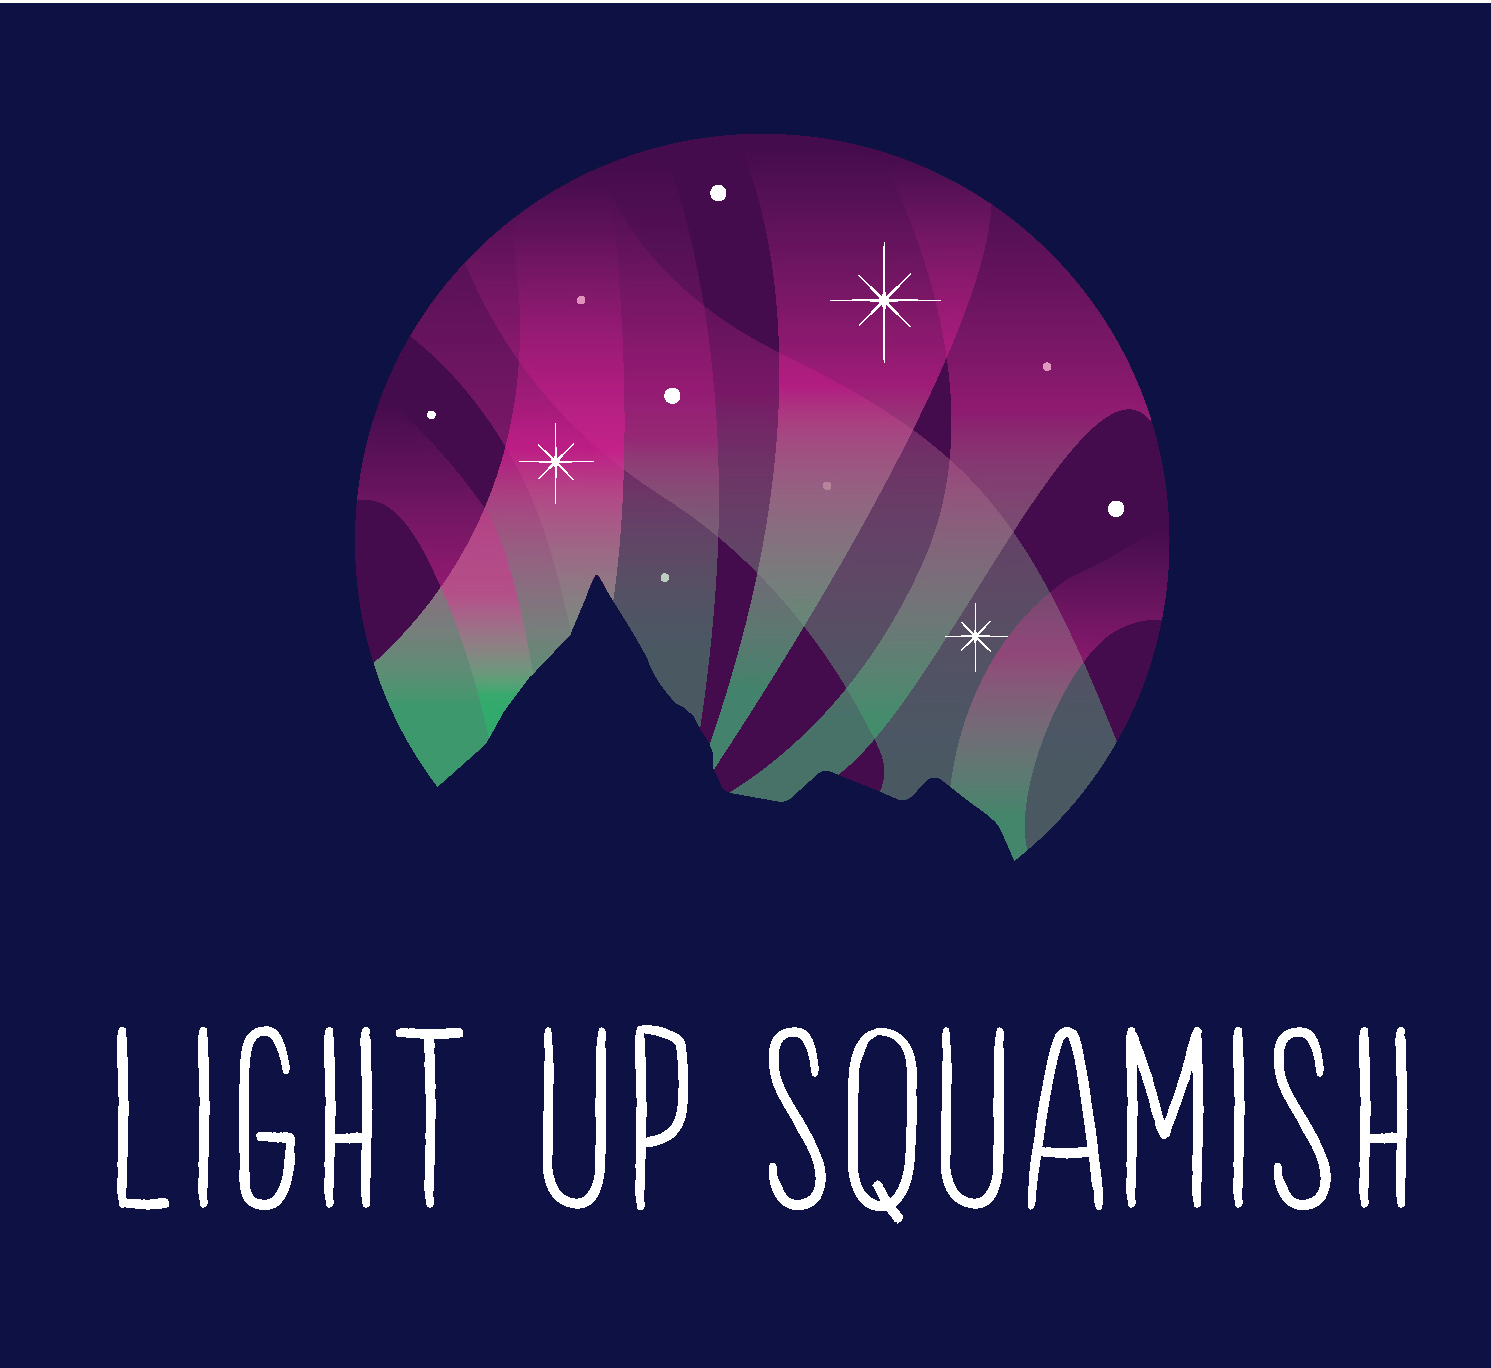 https://www.downtownsquamish.com/wp-content/uploads/2020/11/Light-up-Squamish-Logo_horizontal-on-blue.jpg